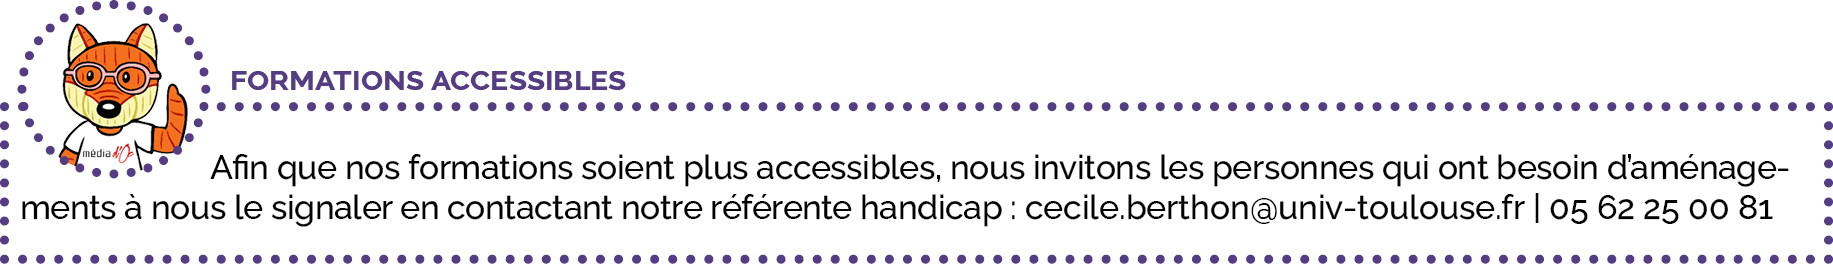 Afin que nos formations soient plus accessibles, nous invitons les personnes qui ont besoin d’aménagements à nous le signaler en contactant notre référente handicap : cecile.berthon@univ-toulouse.fr | 05 62 25 00 81